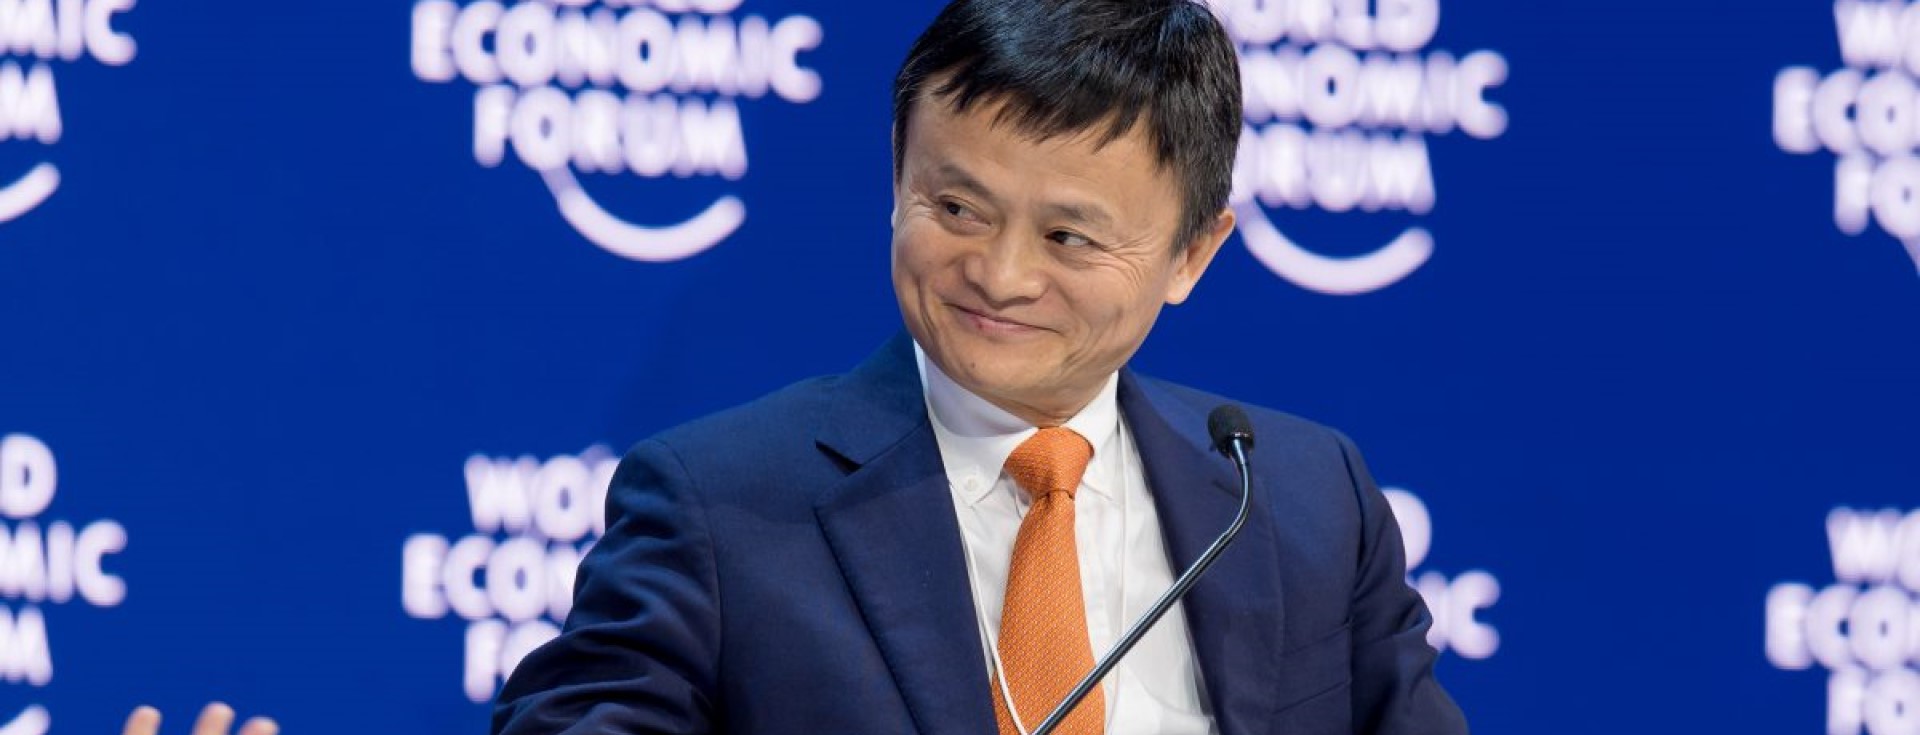 Jack Ma'dan İlk İşte Ne Kadar Kalınması Gerektiği Konusunda Tavsiye